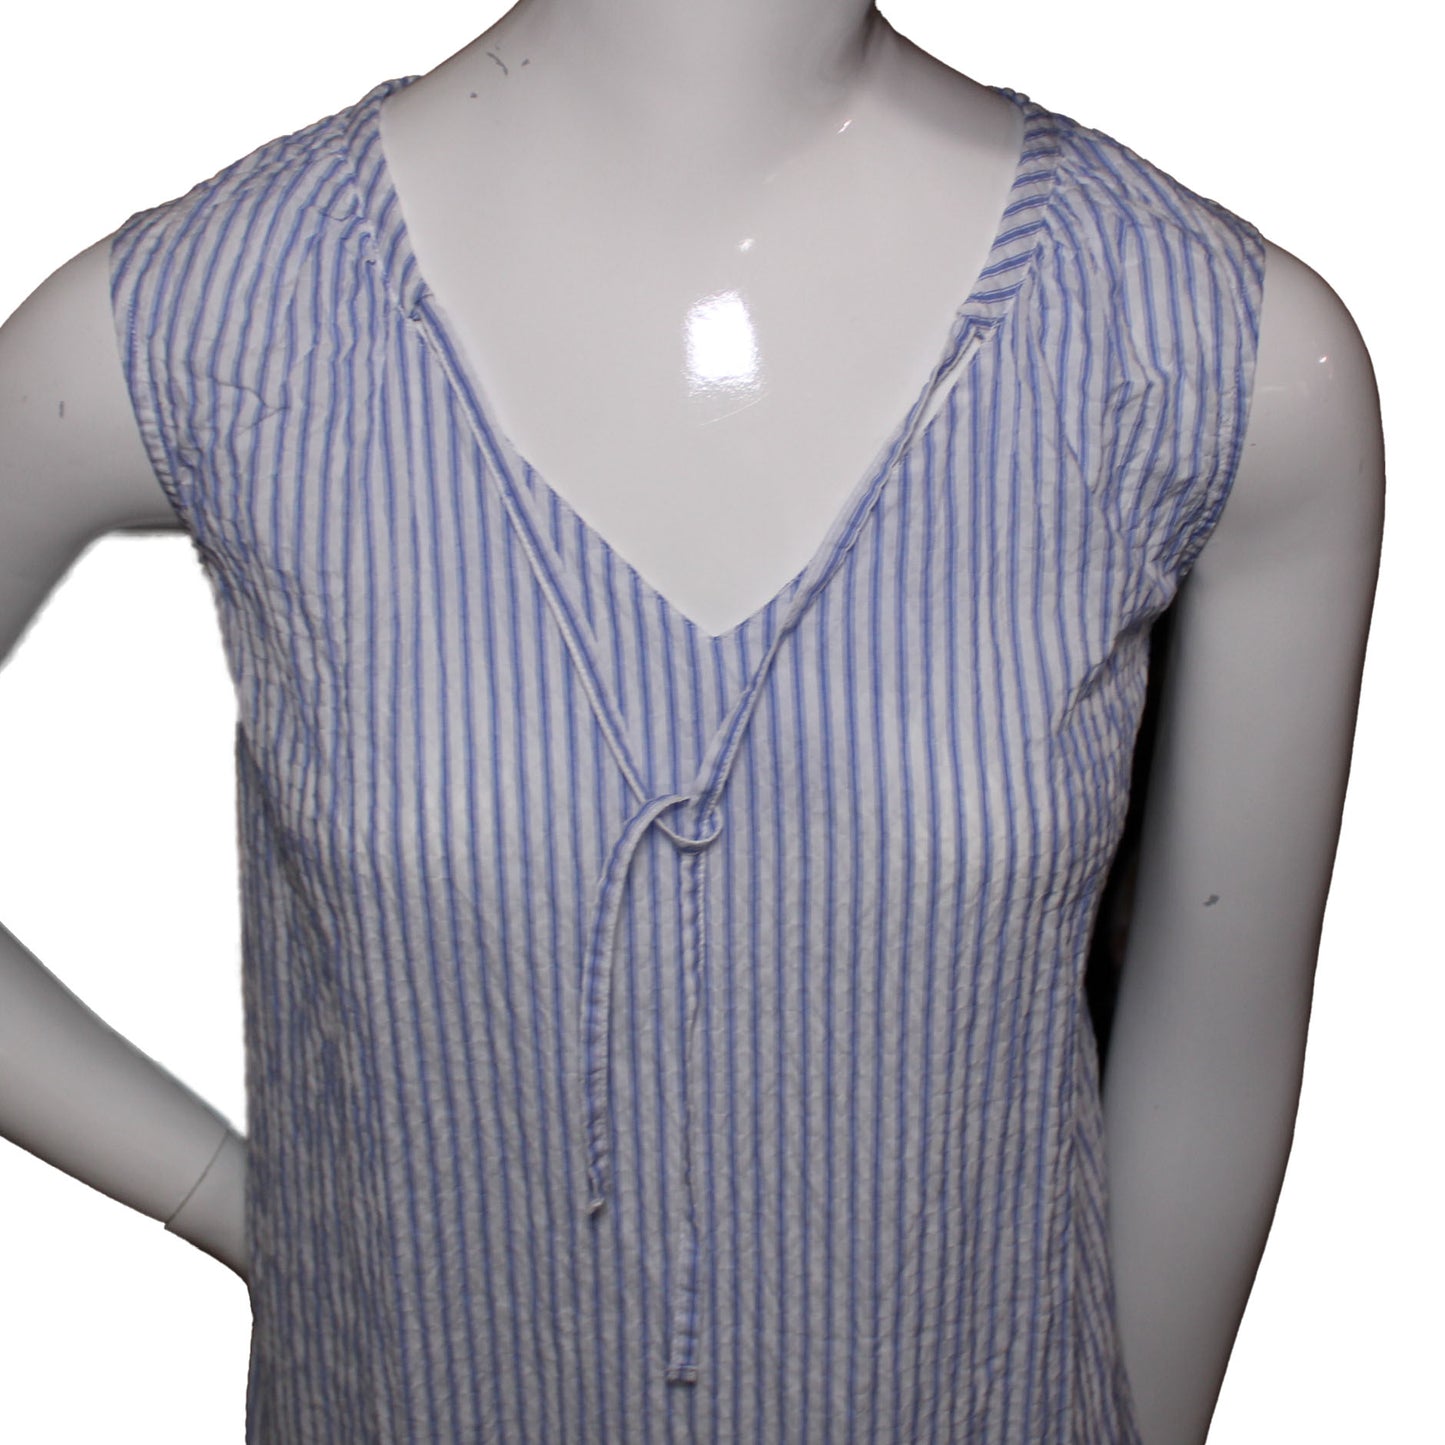 Lands' End Size 14 Petite Sleeveless Seersucker Shell Shirt, Blue Stripe